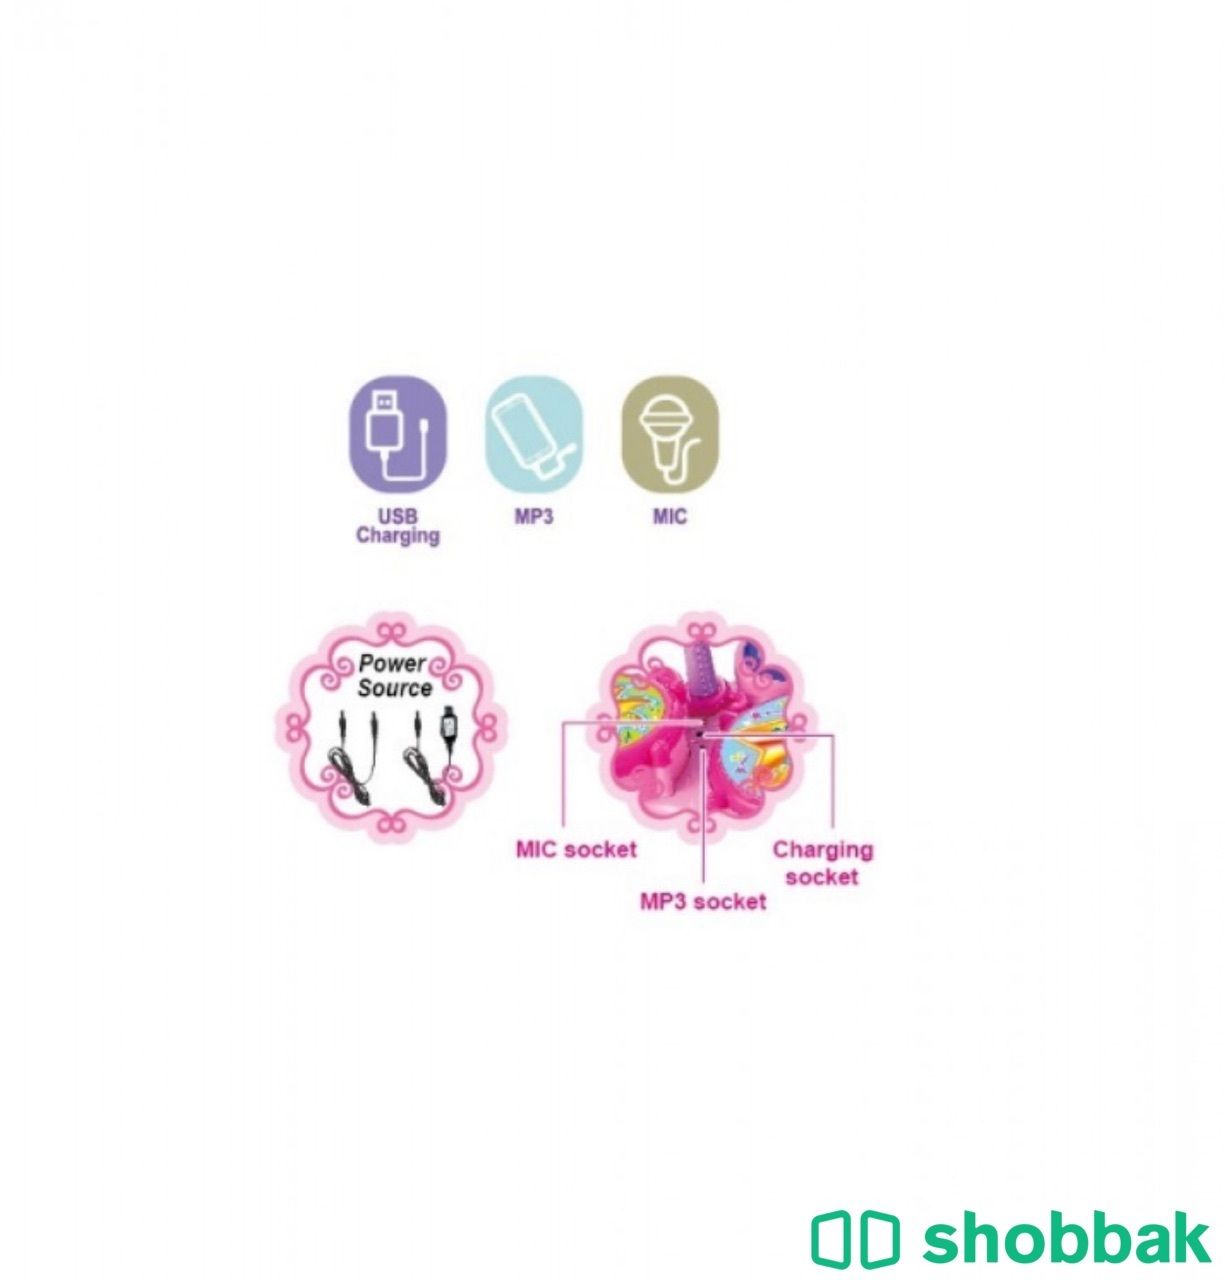 لعبة طبول موسيقية تعليمية Shobbak Saudi Arabia